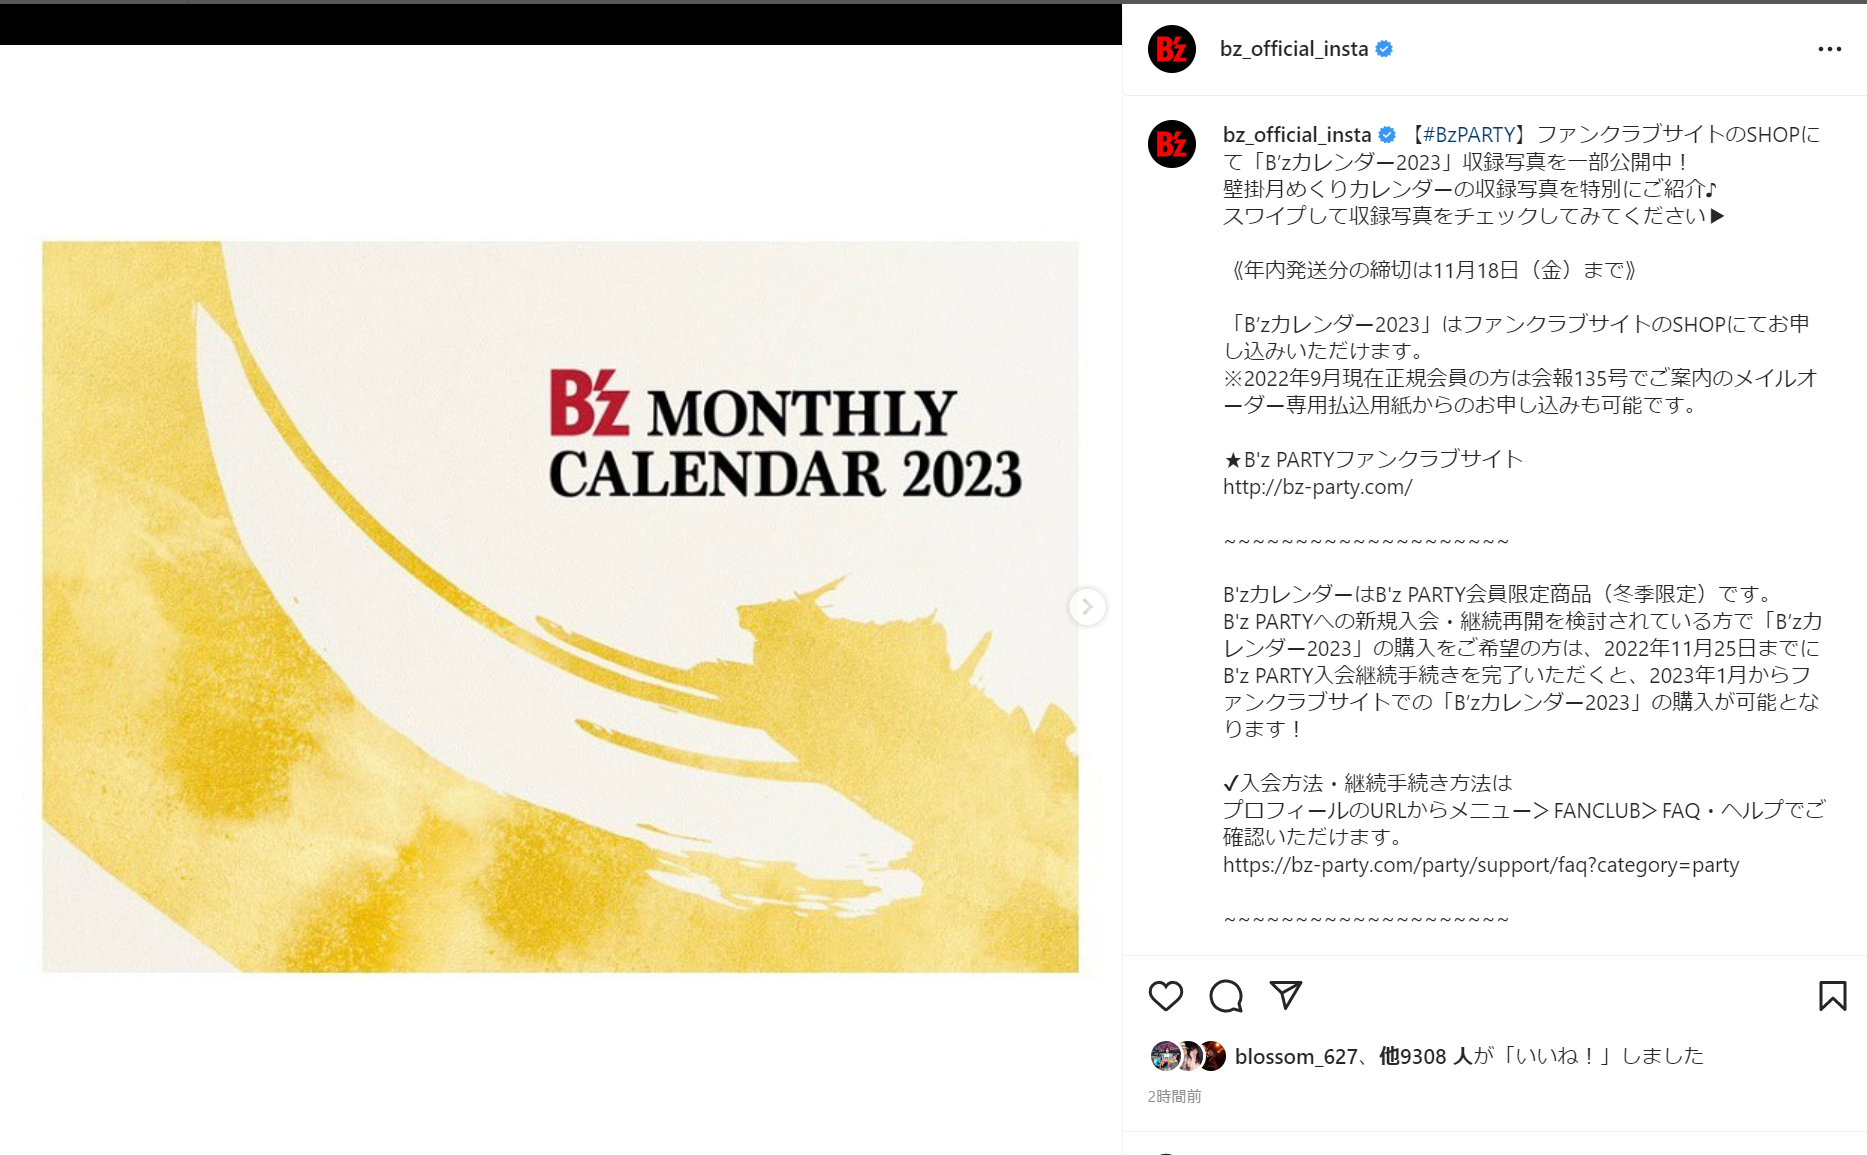 「B'zカレンダー2023」の表紙のイメージ画像